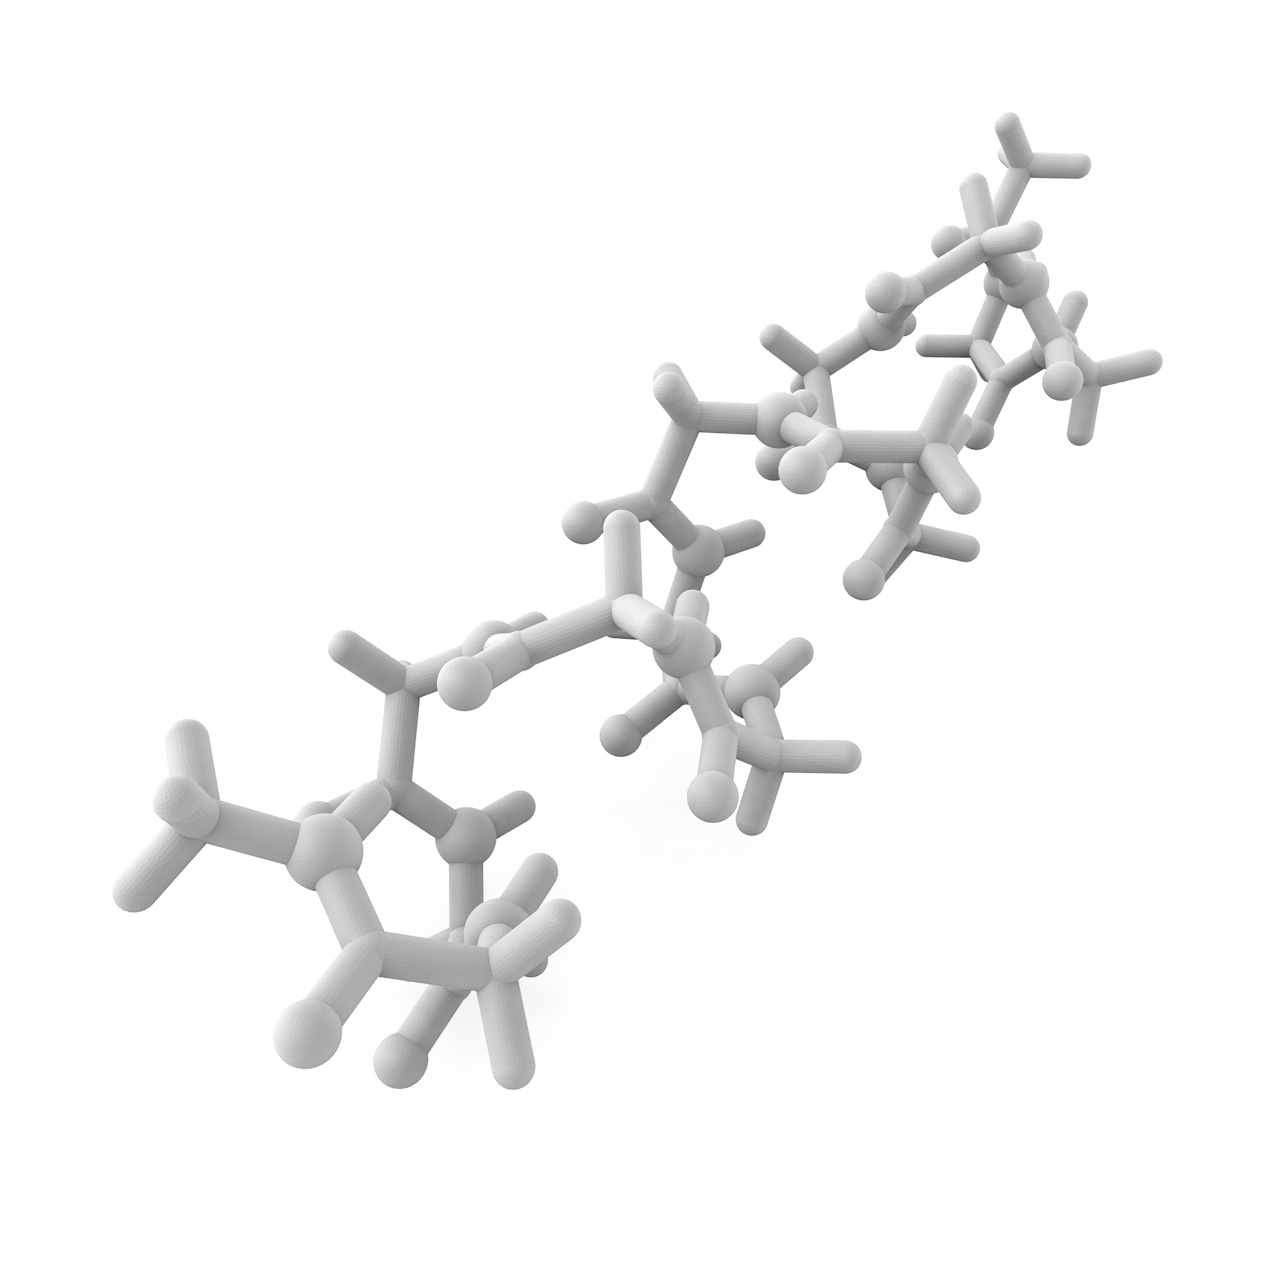 Modelo de impresión 3d de poliglicina alpha helix